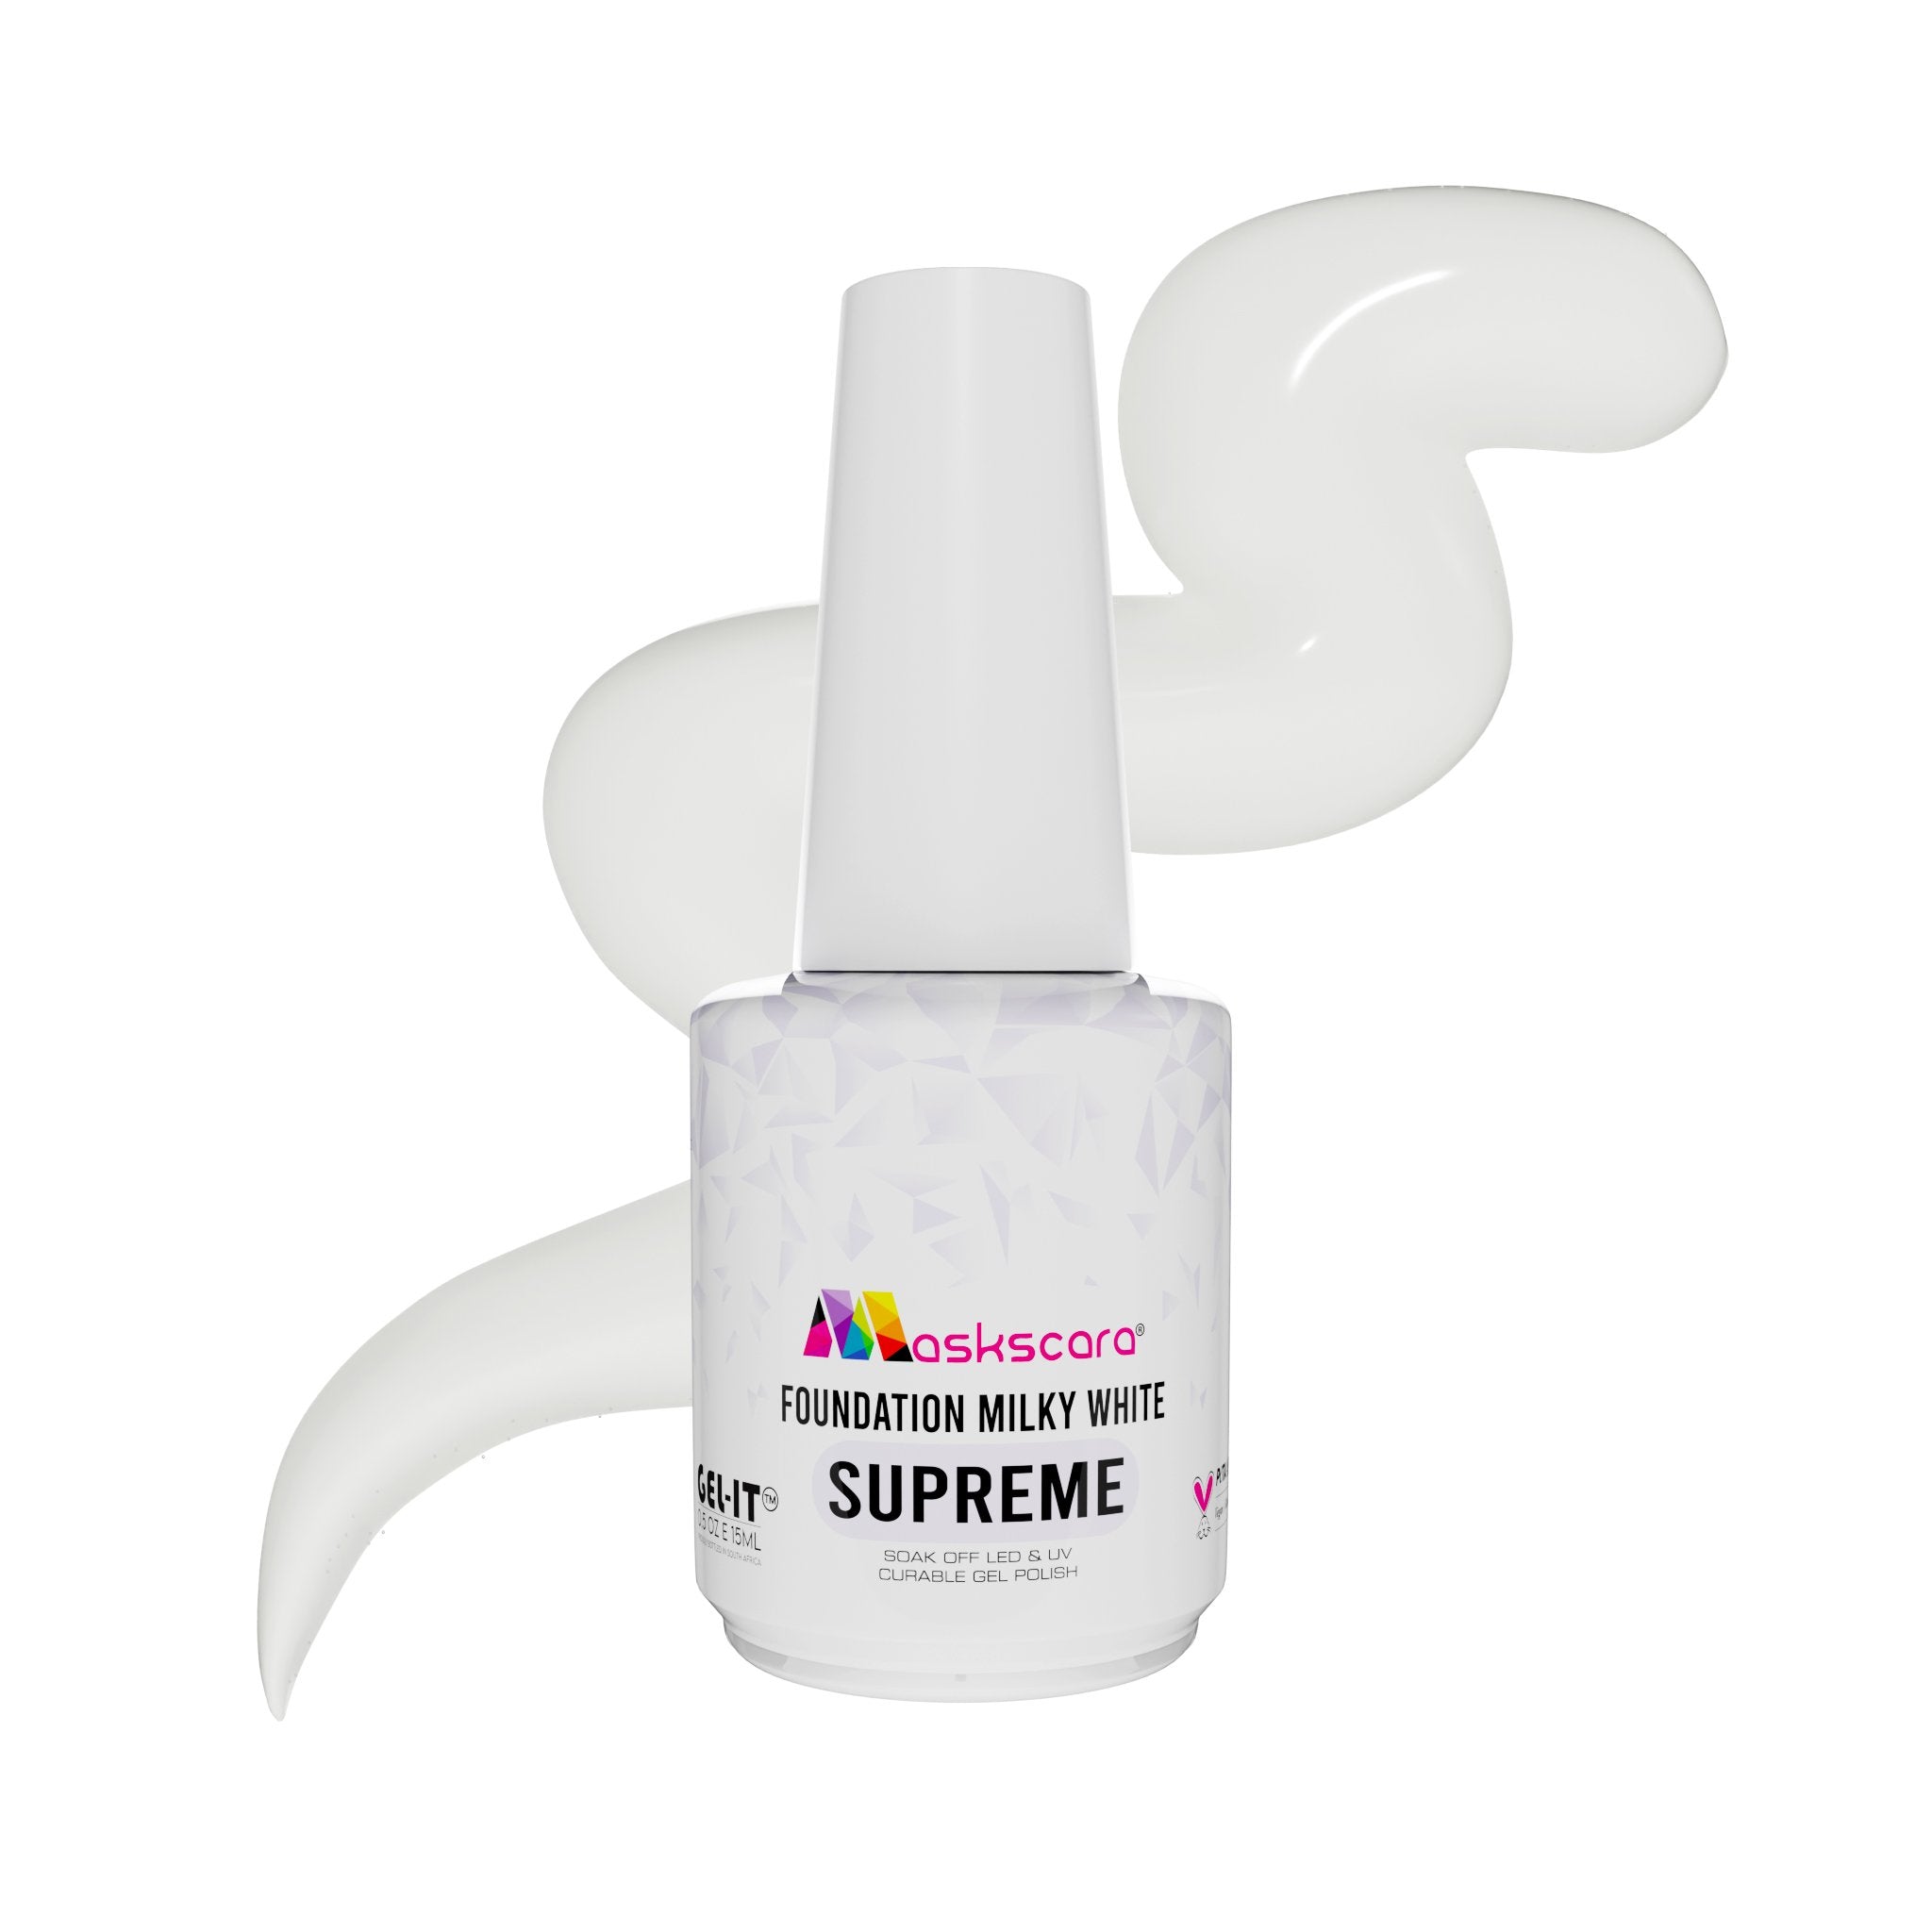 <img scr = “Maskscara Supreme Nail Foundation - Milky White.jpg” alt = “Milky White Supreme Foundation Gel by the brand Maskscara”>